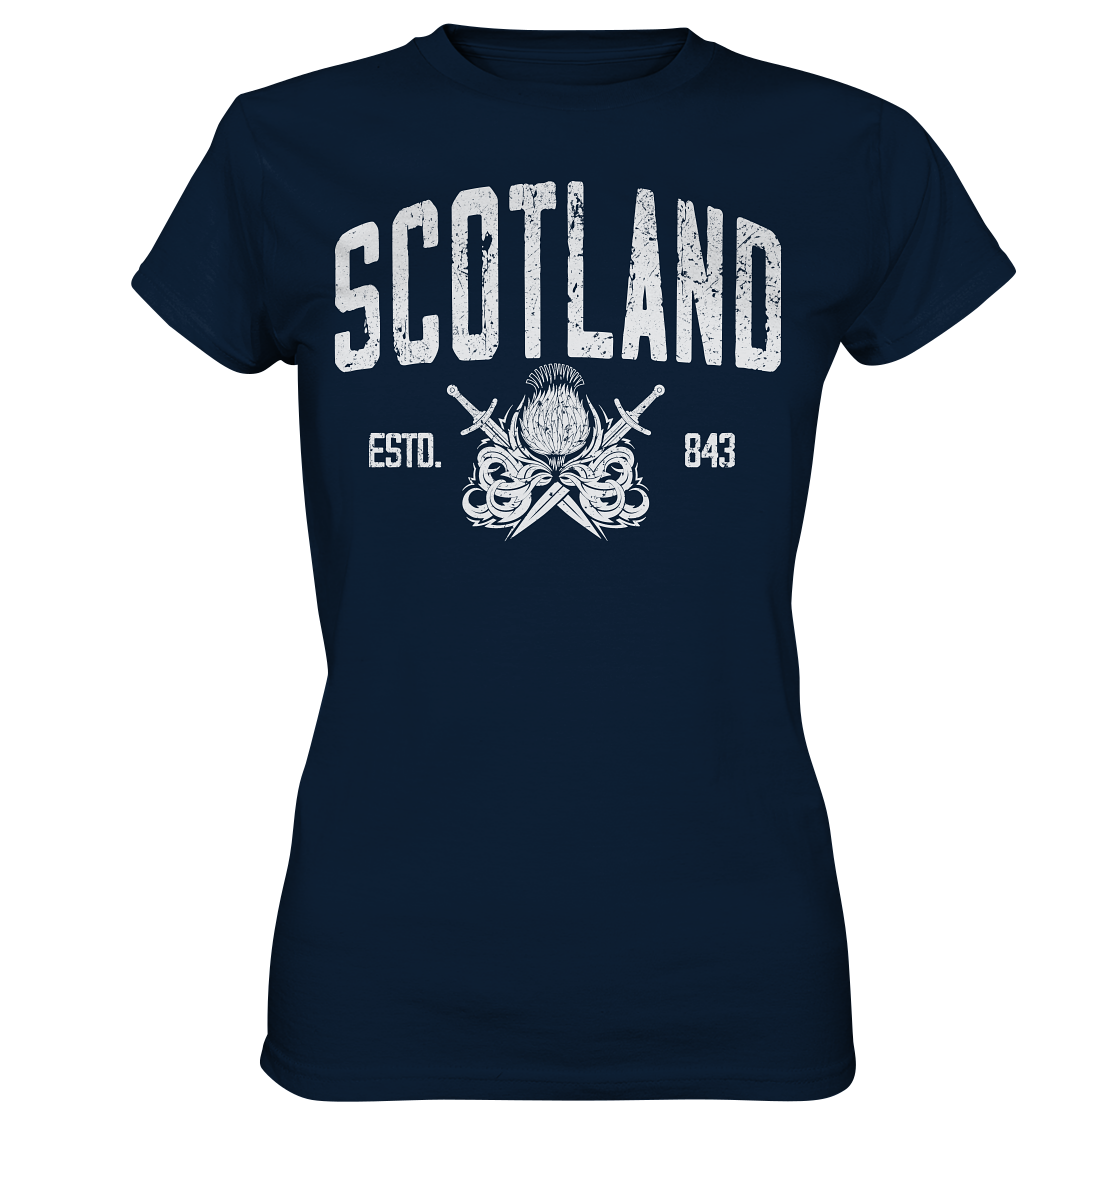 Scotland "Estd. 843" - Ladies Premium Shirt